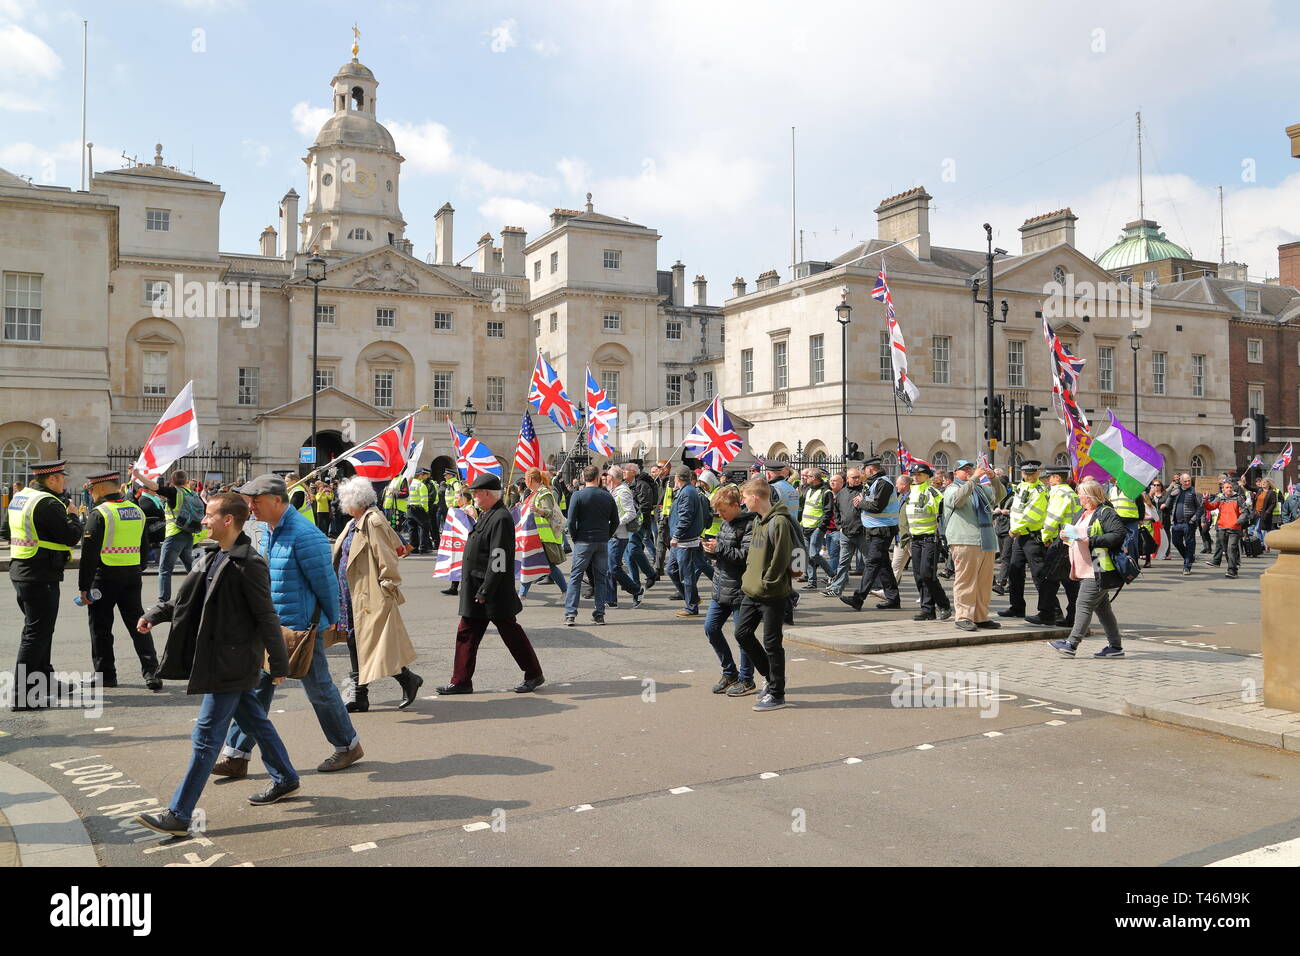 Pro-Brexit le long de Whitehall mars des manifestants dans la ville de Westminster, London, UK Banque D'Images